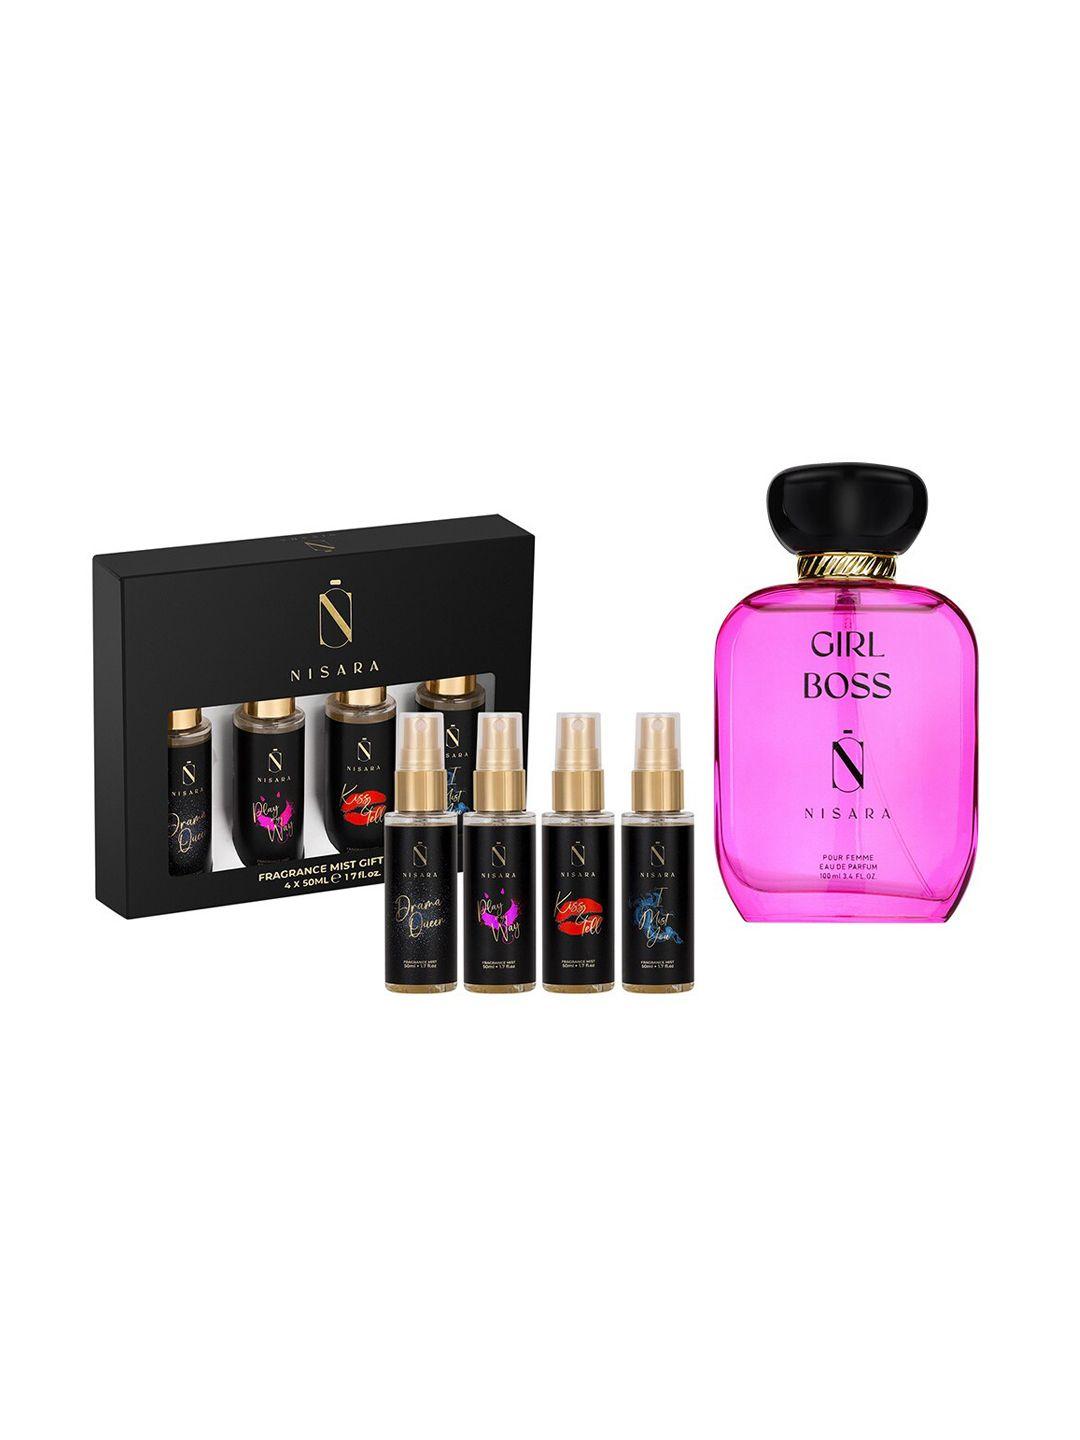 nisara-girl-boss-perfume-&-fragrance-body-mist-gift-set